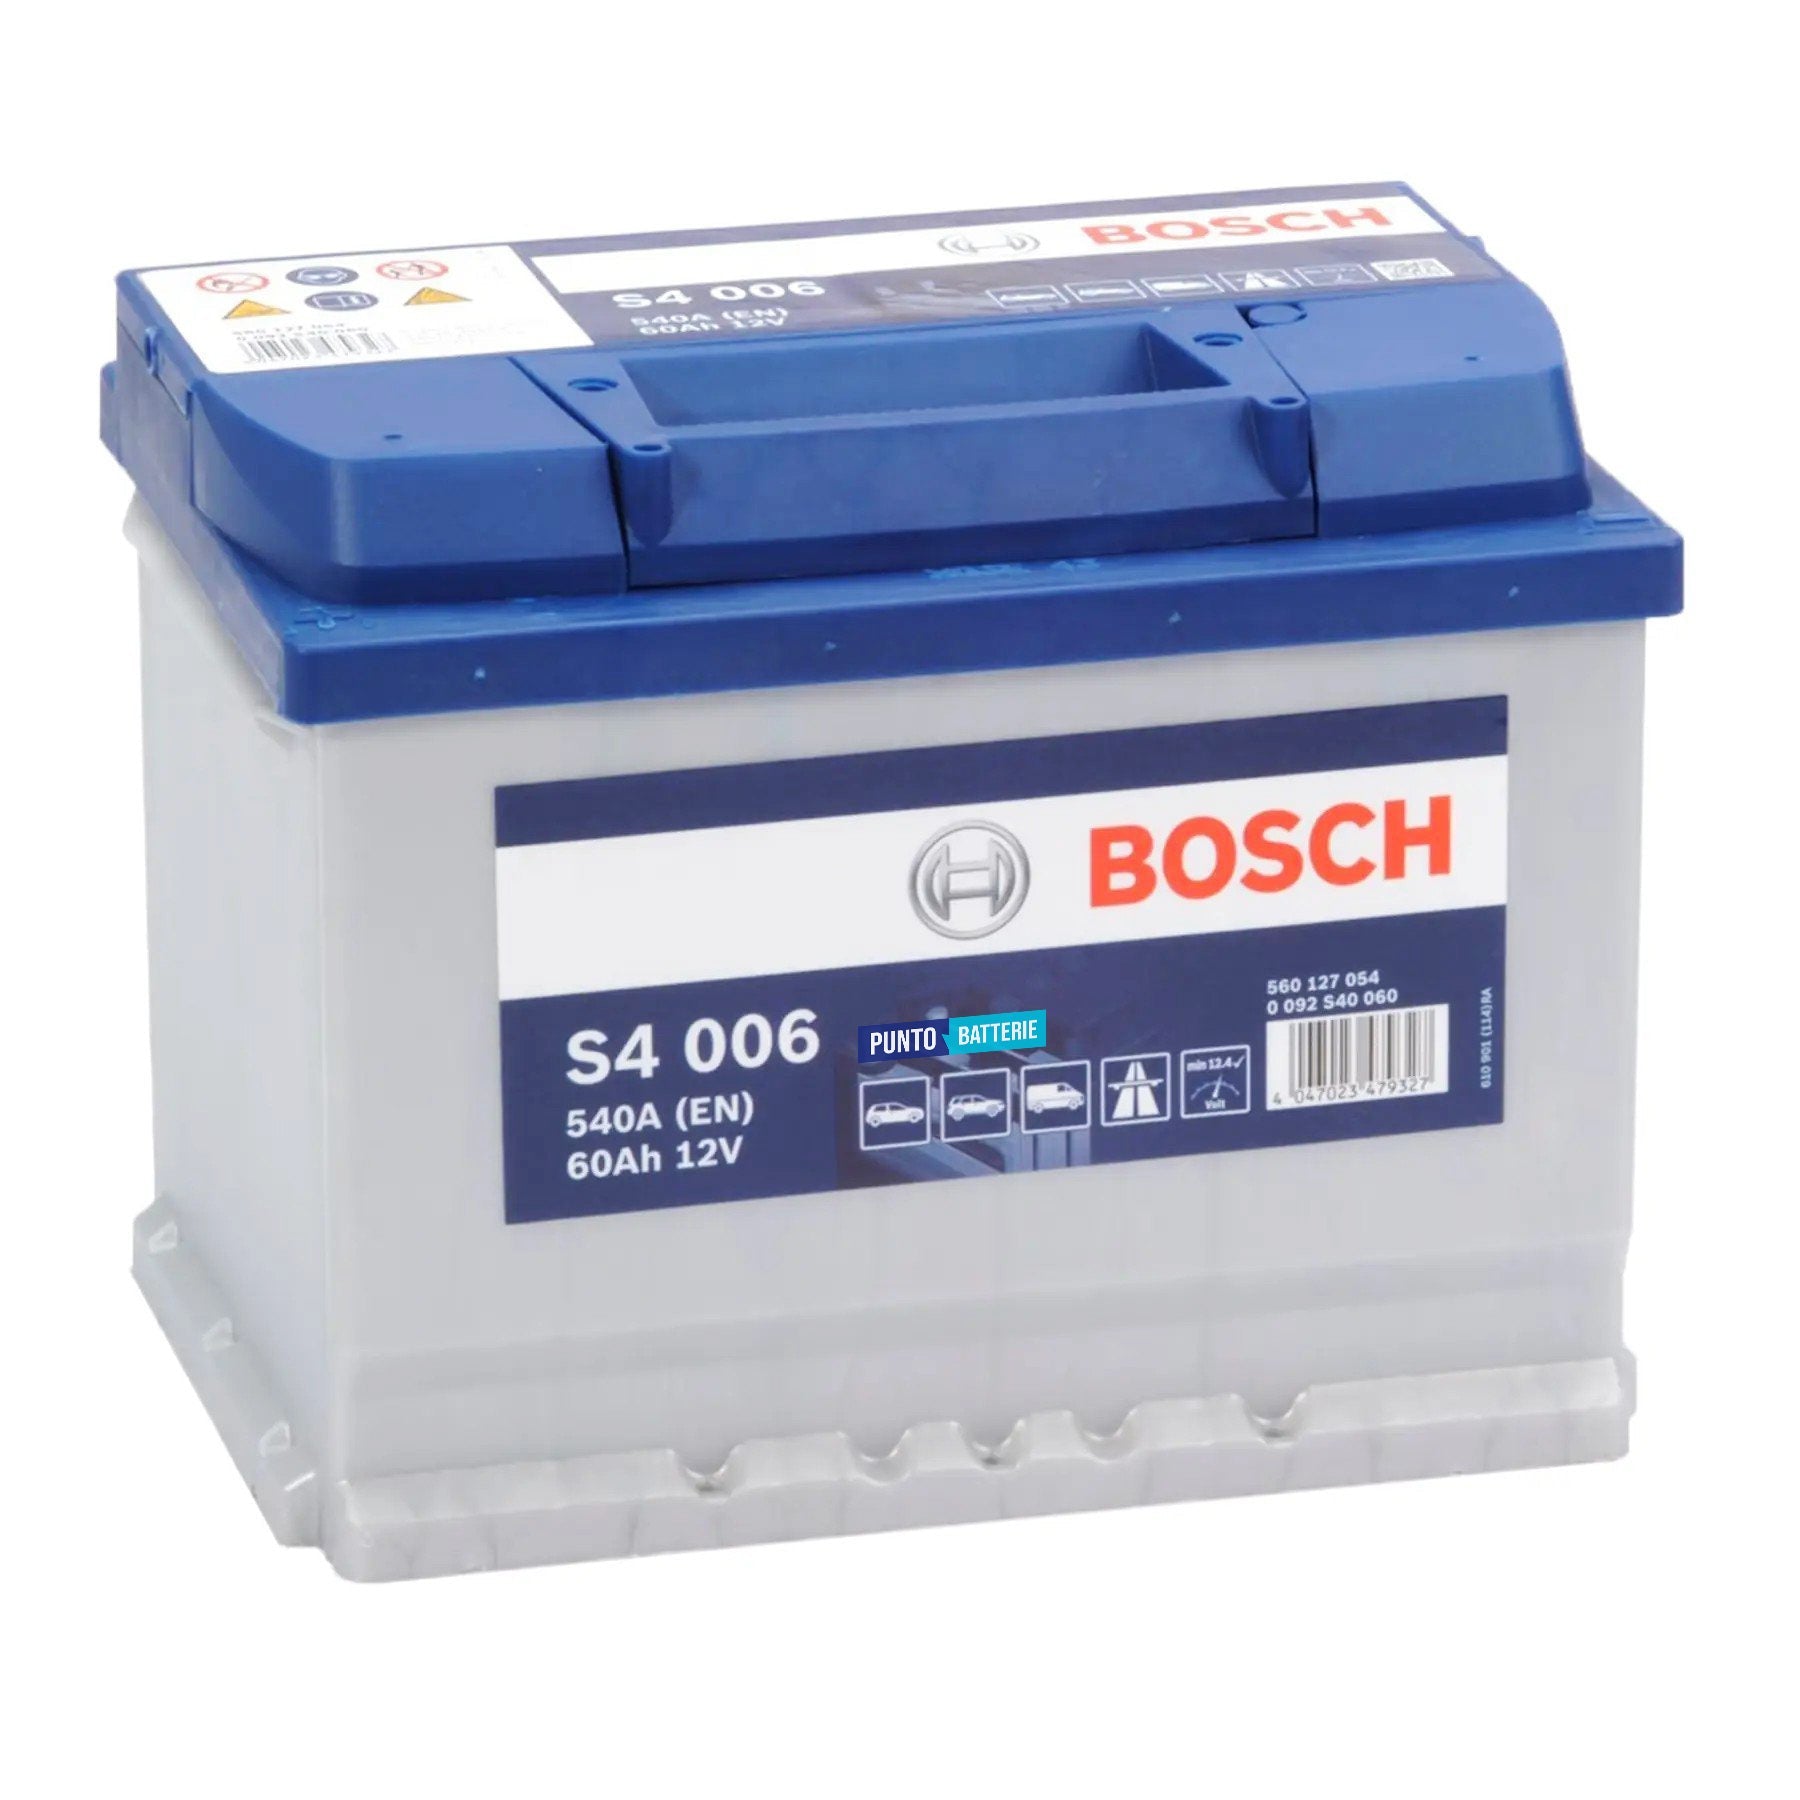 Batteria originale Bosch S4 S4 006, dimensioni 242 x 175 x 190, polo positivo a sinistra, 12 volt, 60 amperora, 540 ampere. Batteria per auto e veicoli leggeri.